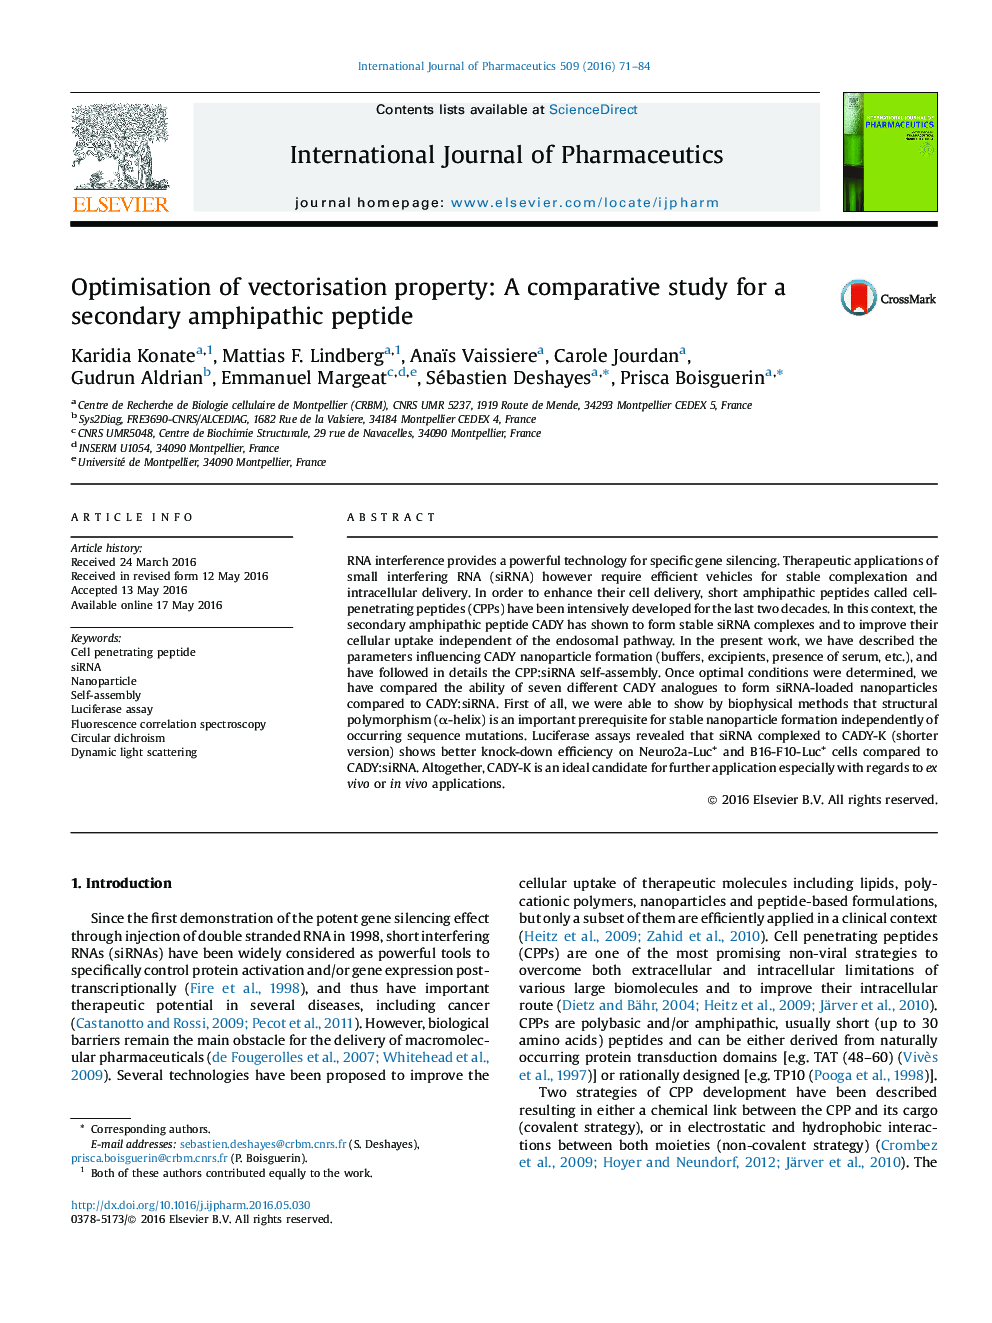 بهینه سازی ویژگی بردار زایی: یک مطالعه مقایسه ای برای یک پپتید آمفی فیتات ثانویه 